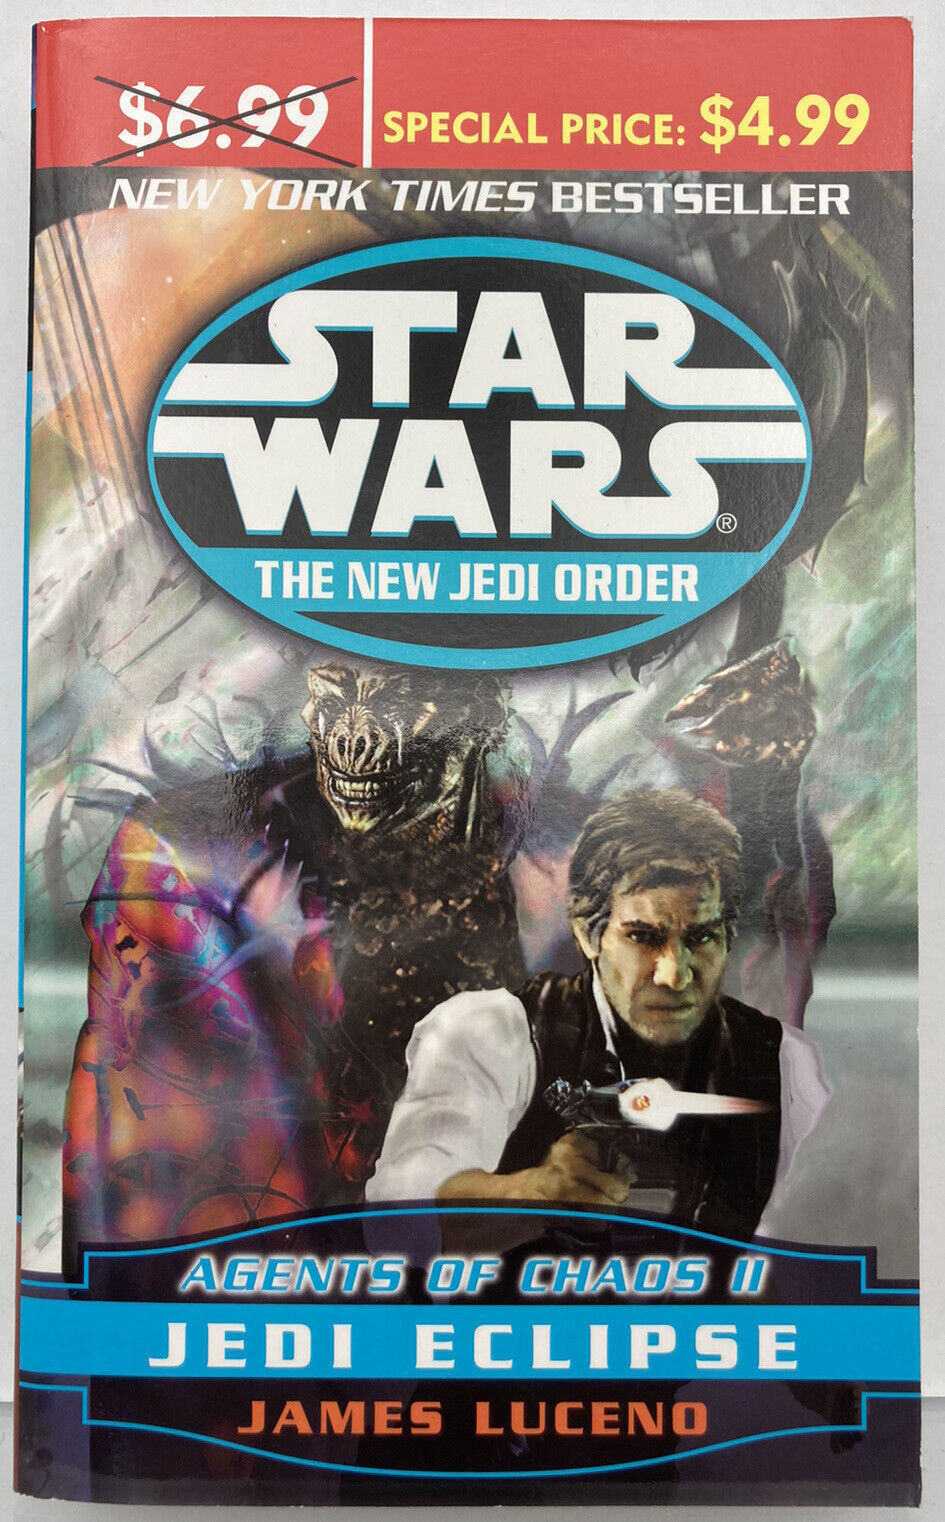 Star Wars: The New Jedi Order - AOC2 JEDI ECLIPSE J Luceno -Pre-LEGENDS Ver. PB